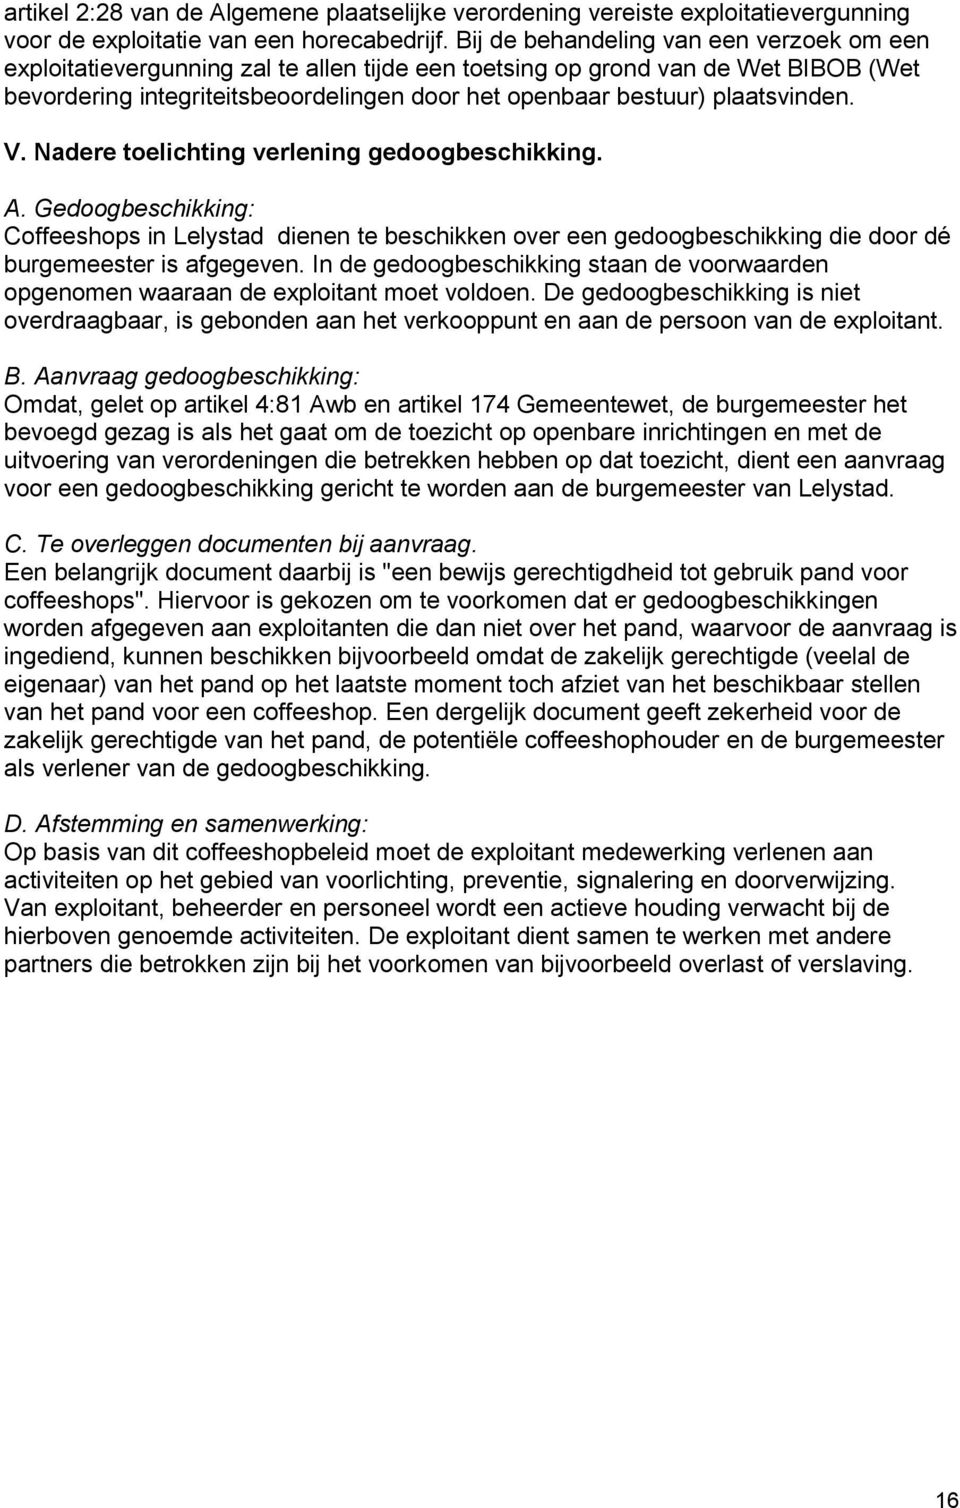 plaatsvinden. V. Nadere toelichting verlening gedoogbeschikking. A. Gedoogbeschikking: Coffeeshops in Lelystad dienen te beschikken over een gedoogbeschikking die door dé burgemeester is afgegeven.